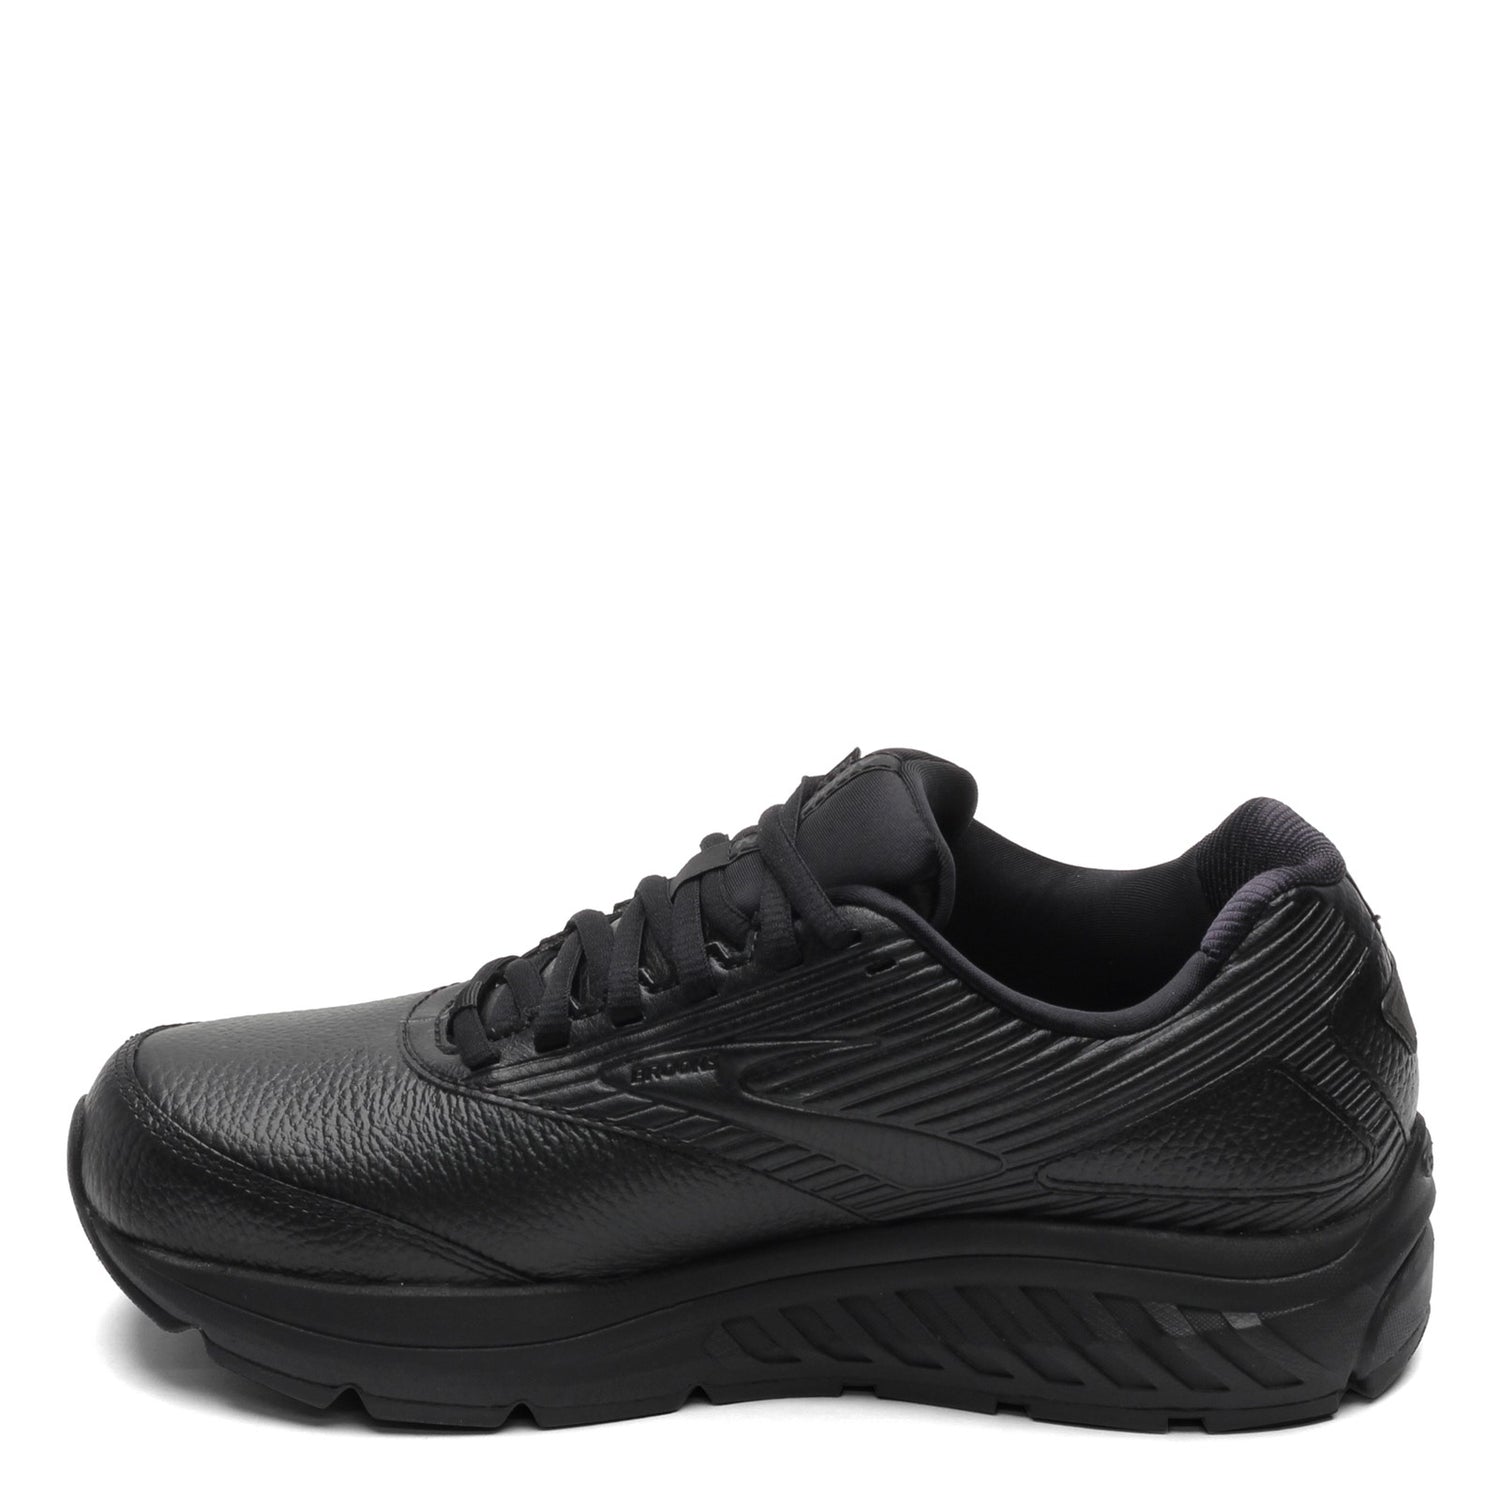 Peltz Shoes  Women's Brooks Addiction Walker 2 Walking Shoe - Narrow Width Black/Black 120307 2A 072